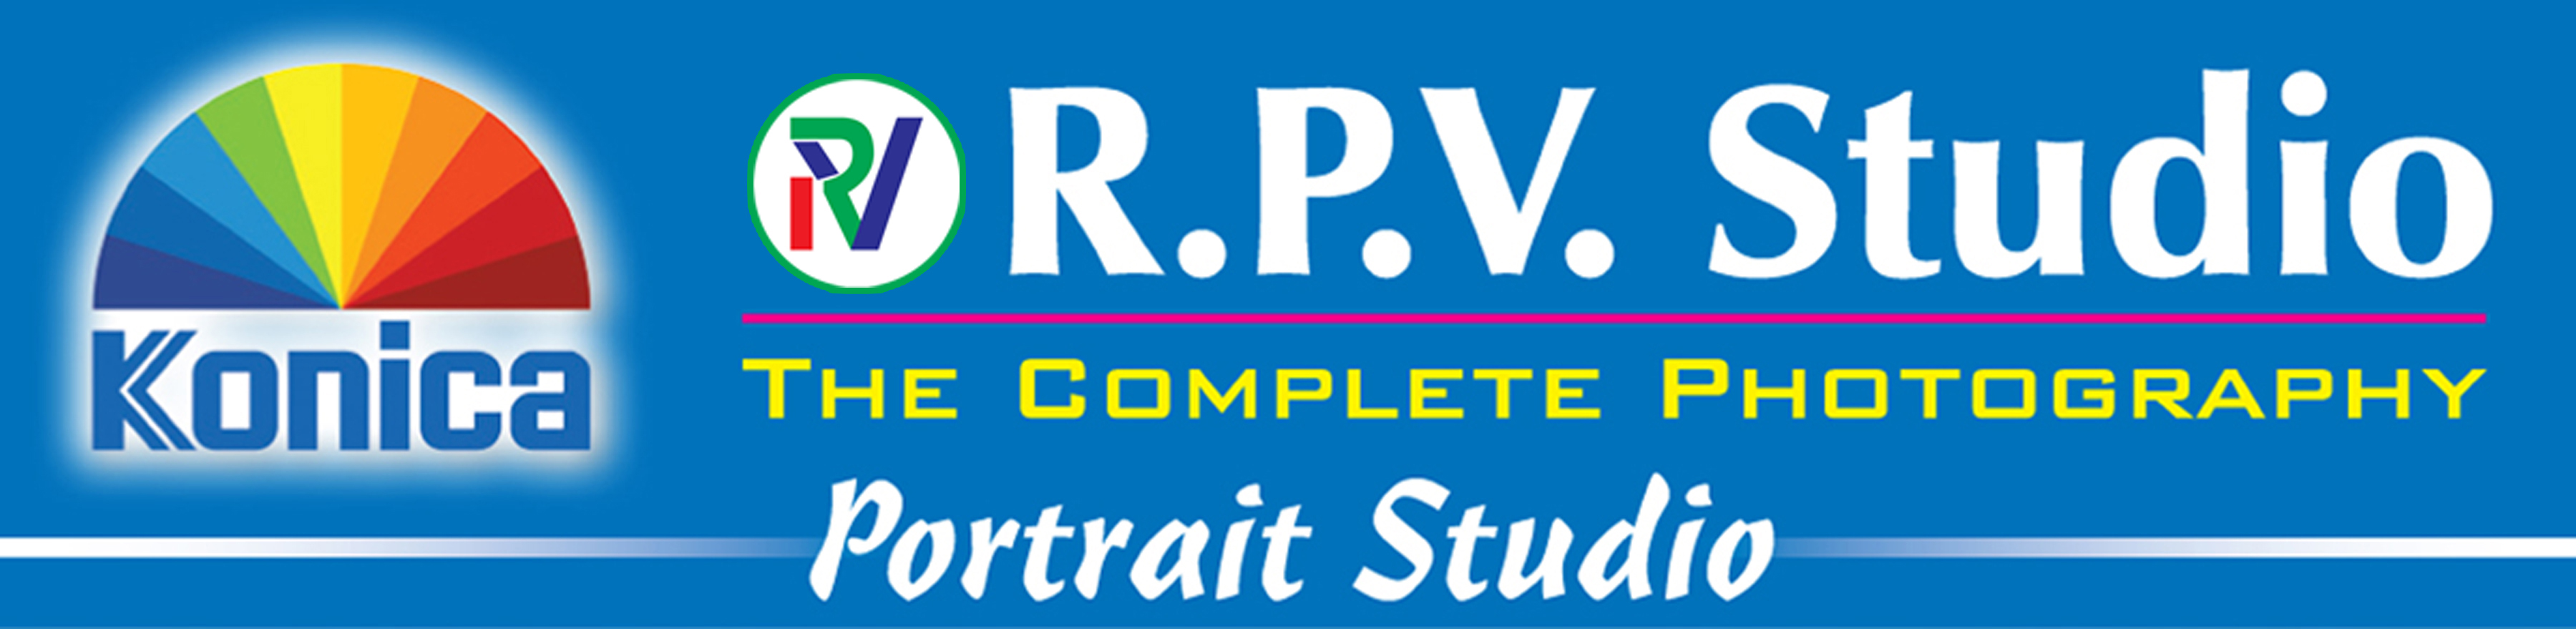 R.P.V. Studio|Photographer|Event Services